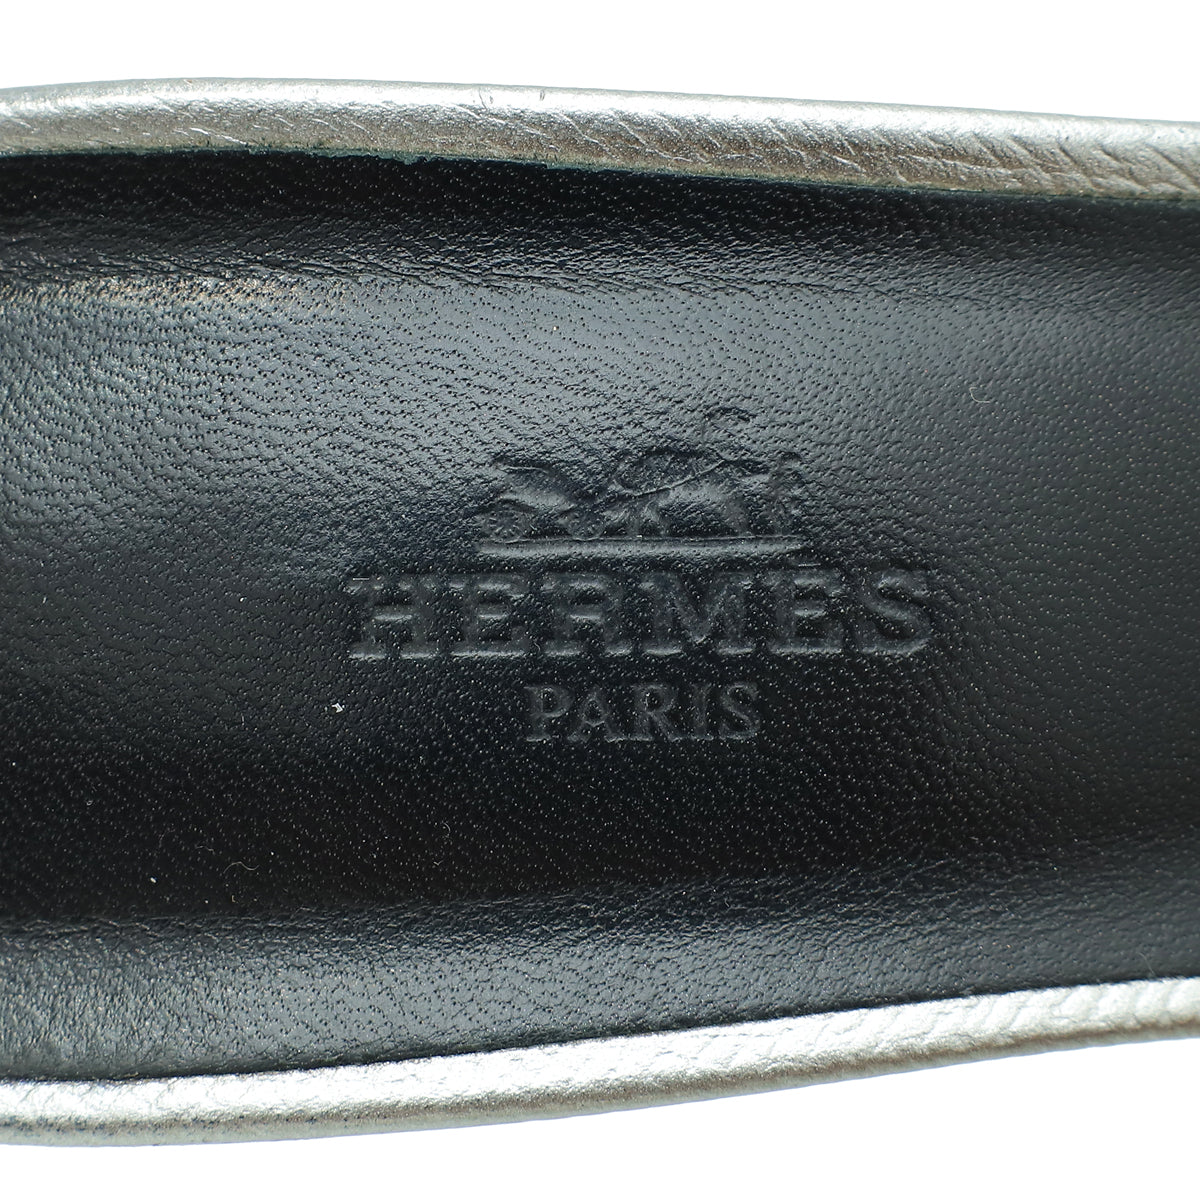 Hermes Gris Very Sandal 39.5